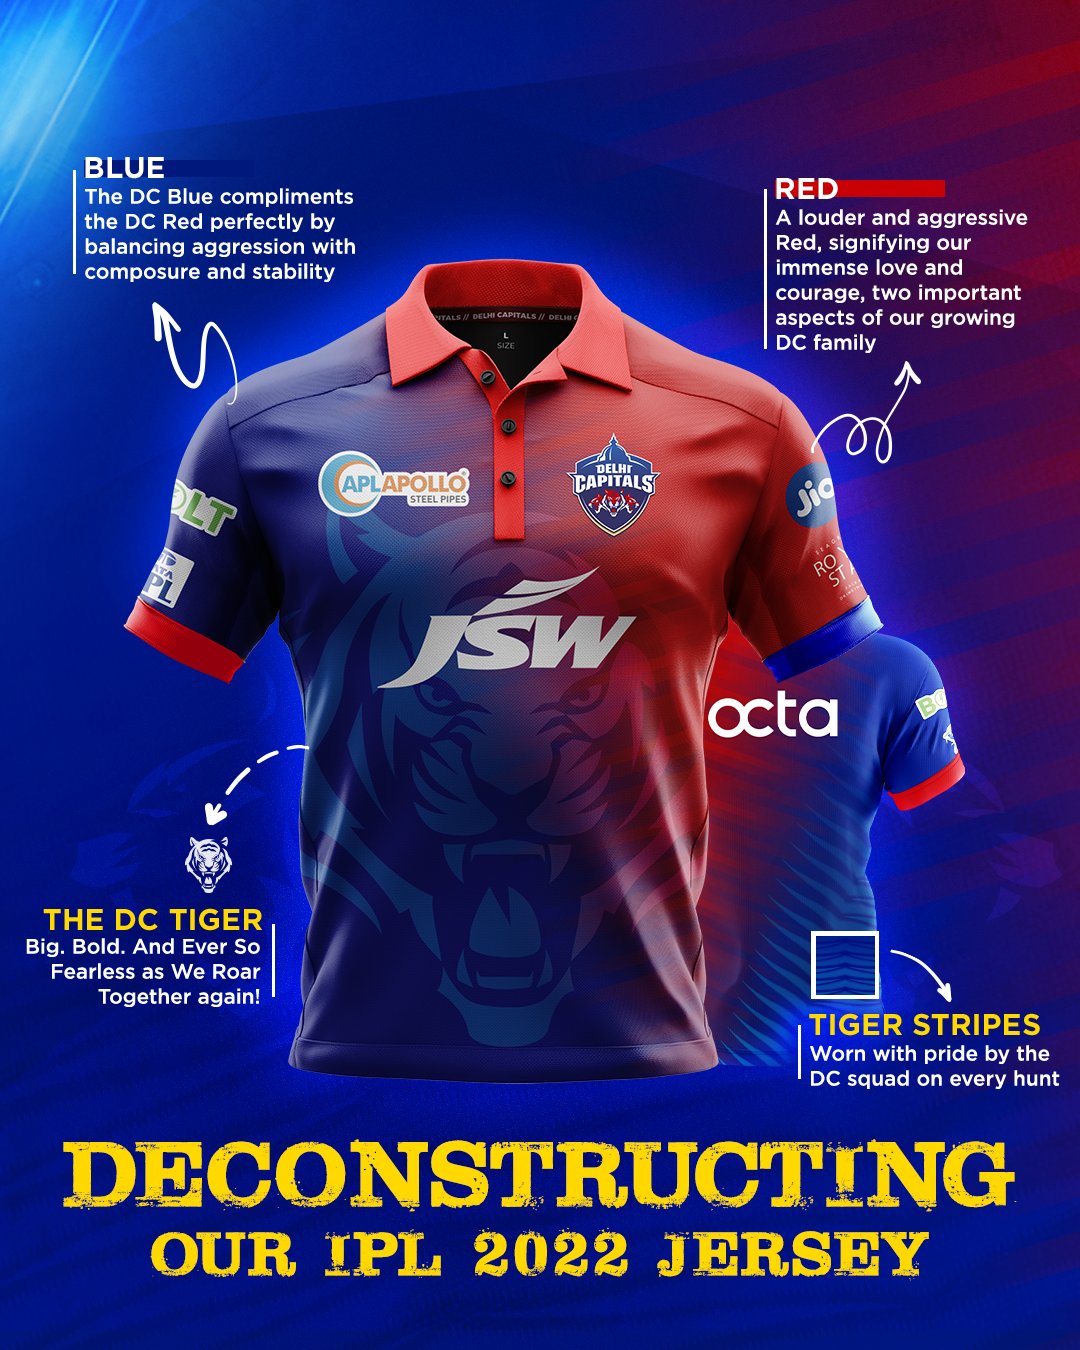 Delhi Capitals unveils new jersey ahead of 2022 IPL season- The